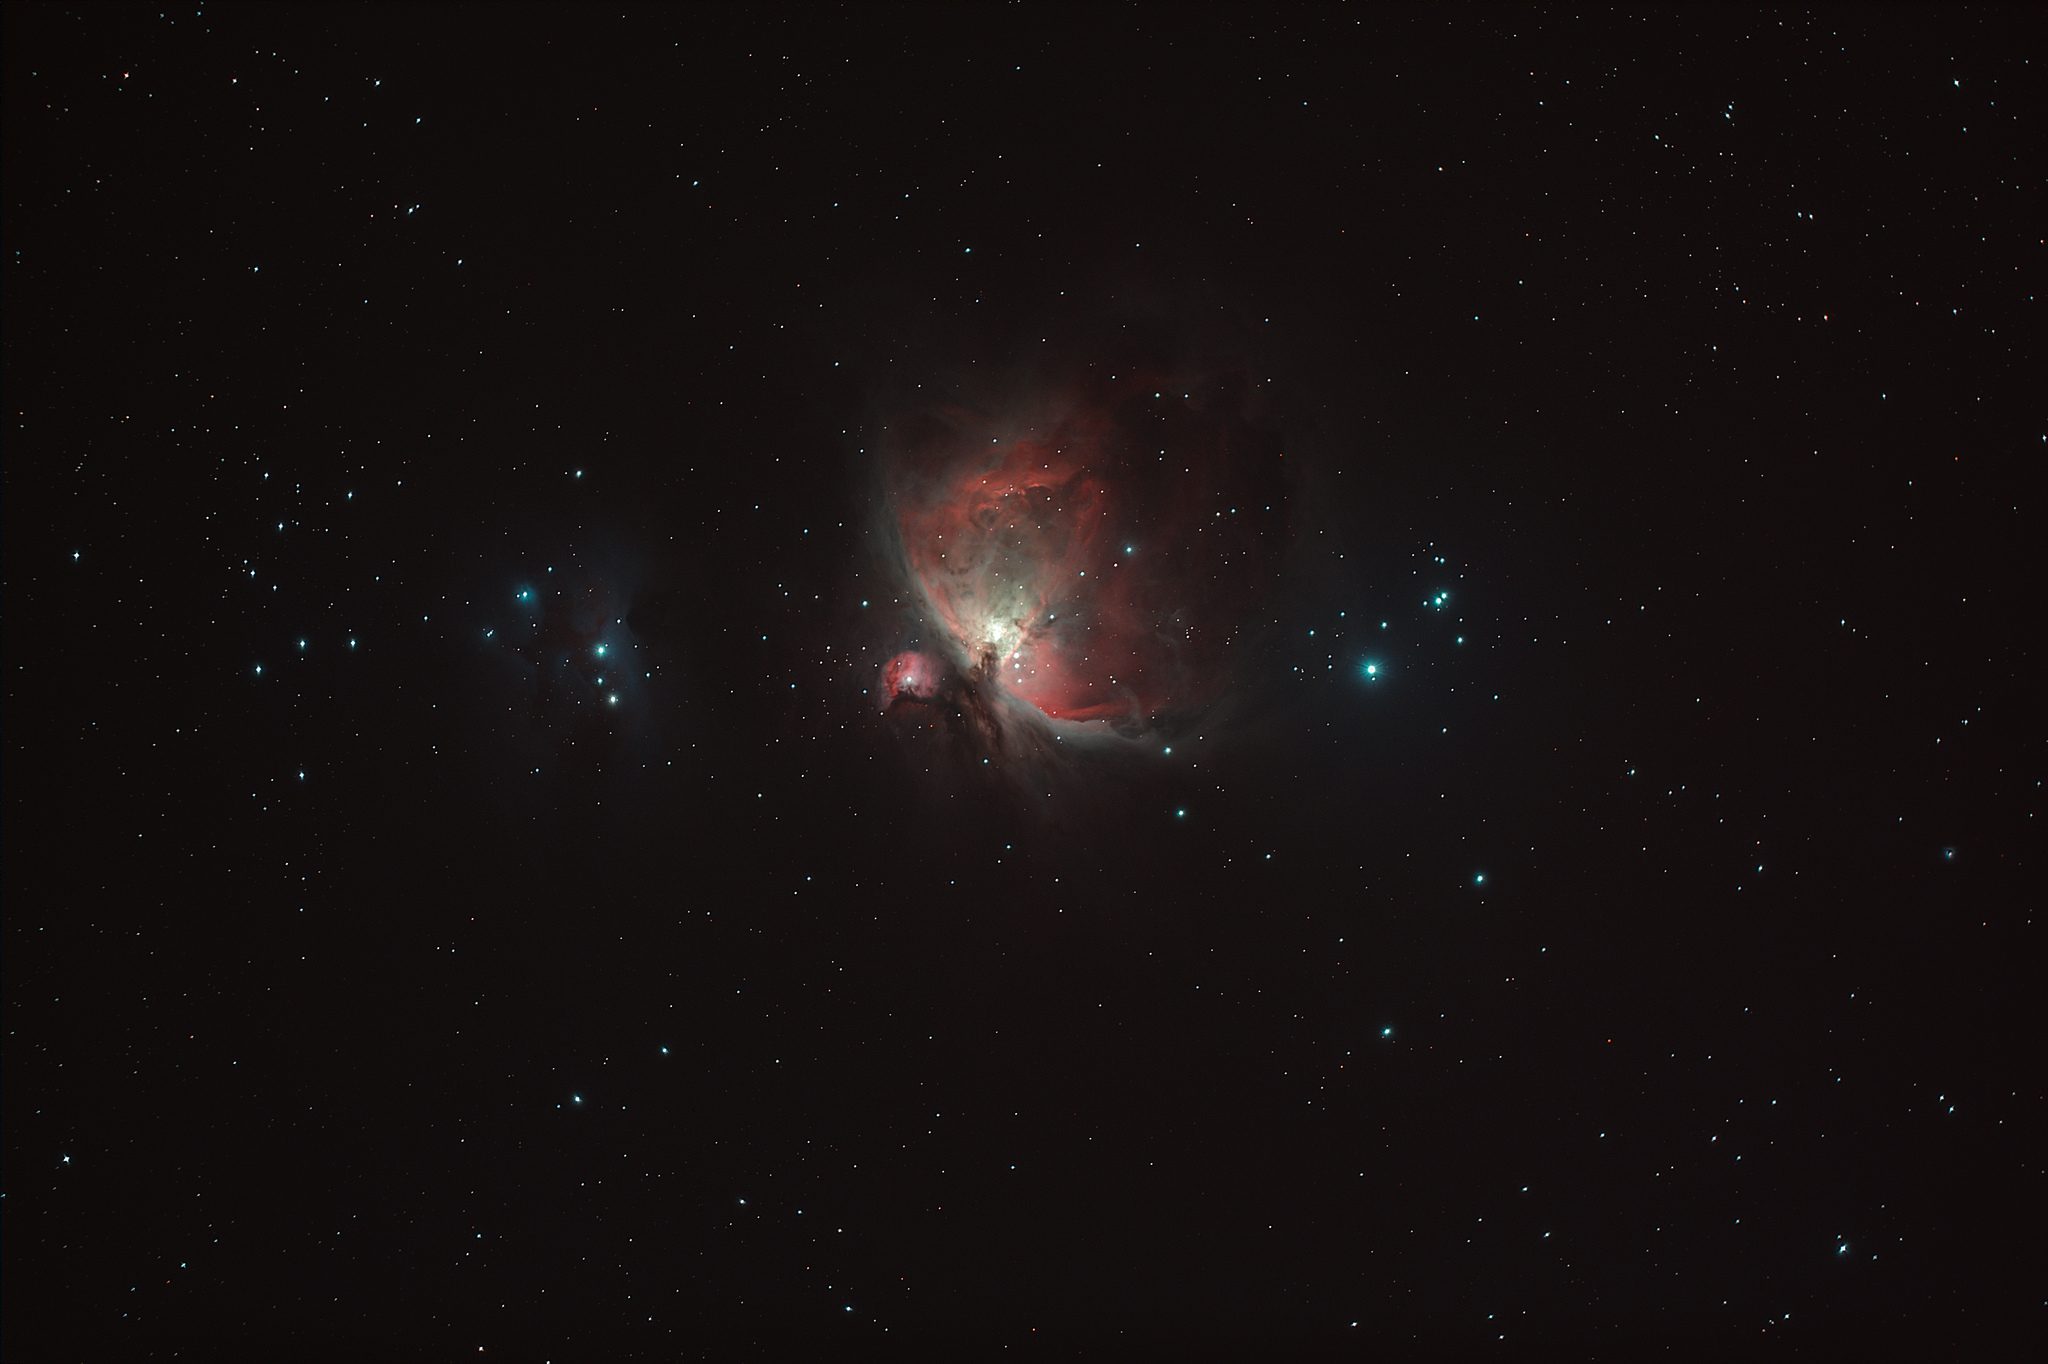 Image amateur de la nébuleuse d'Orion